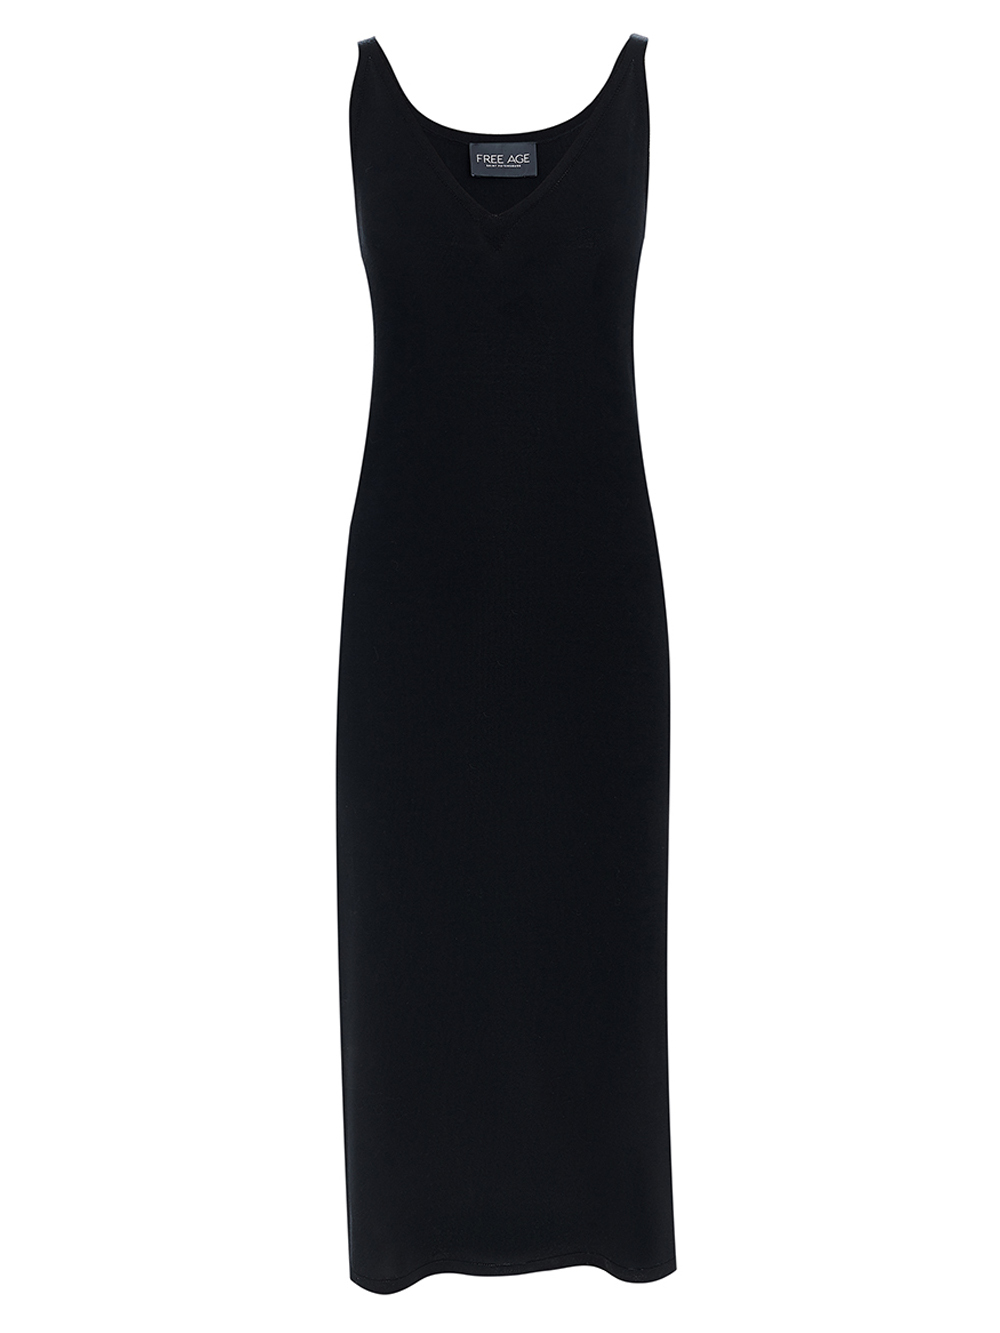 Женское платье черного цвета из вискозы